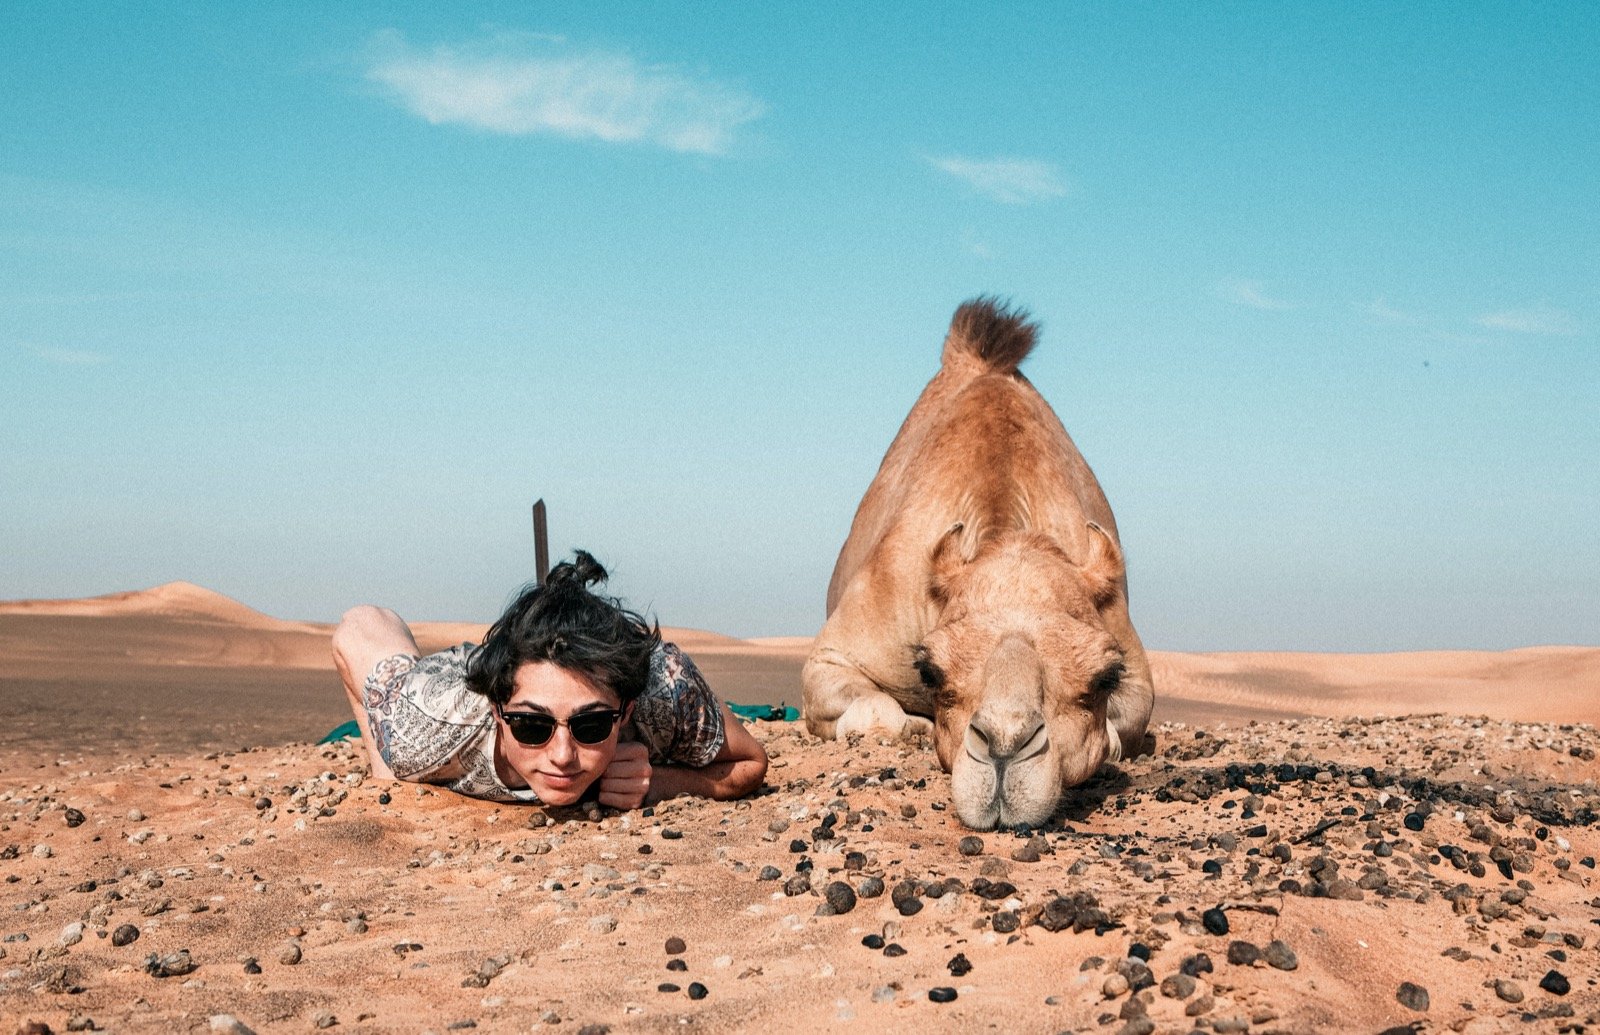 photo d'une personne et d'un dromadaire allongés dans le désert